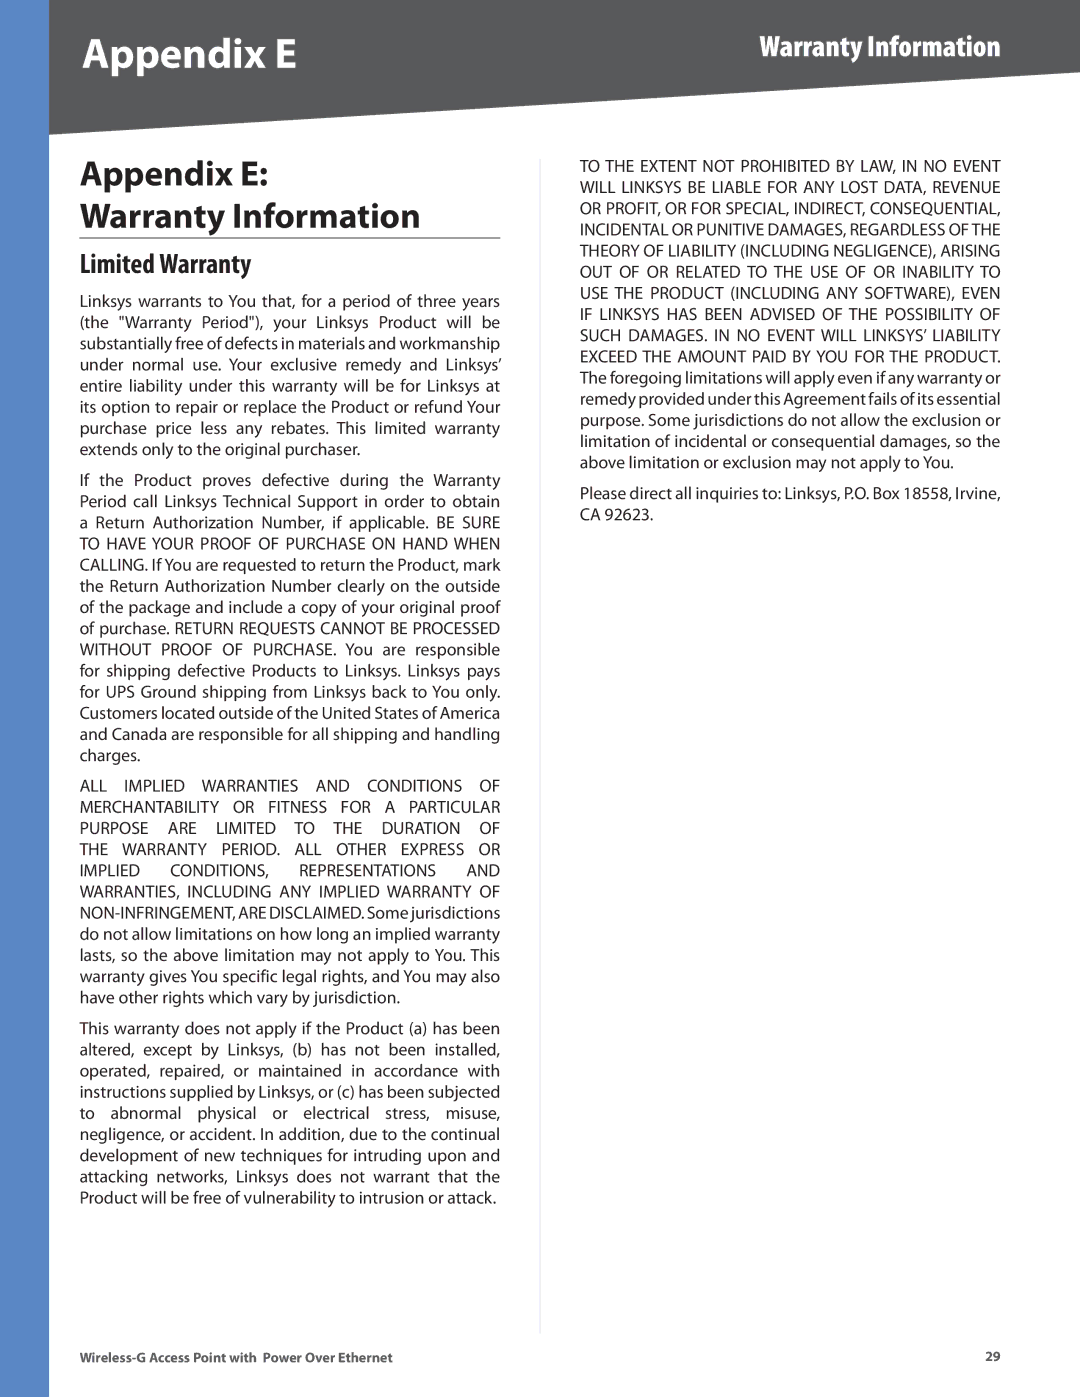 Linksys WAP2000 manual Appendix E, Warranty Information, Limited Warranty 